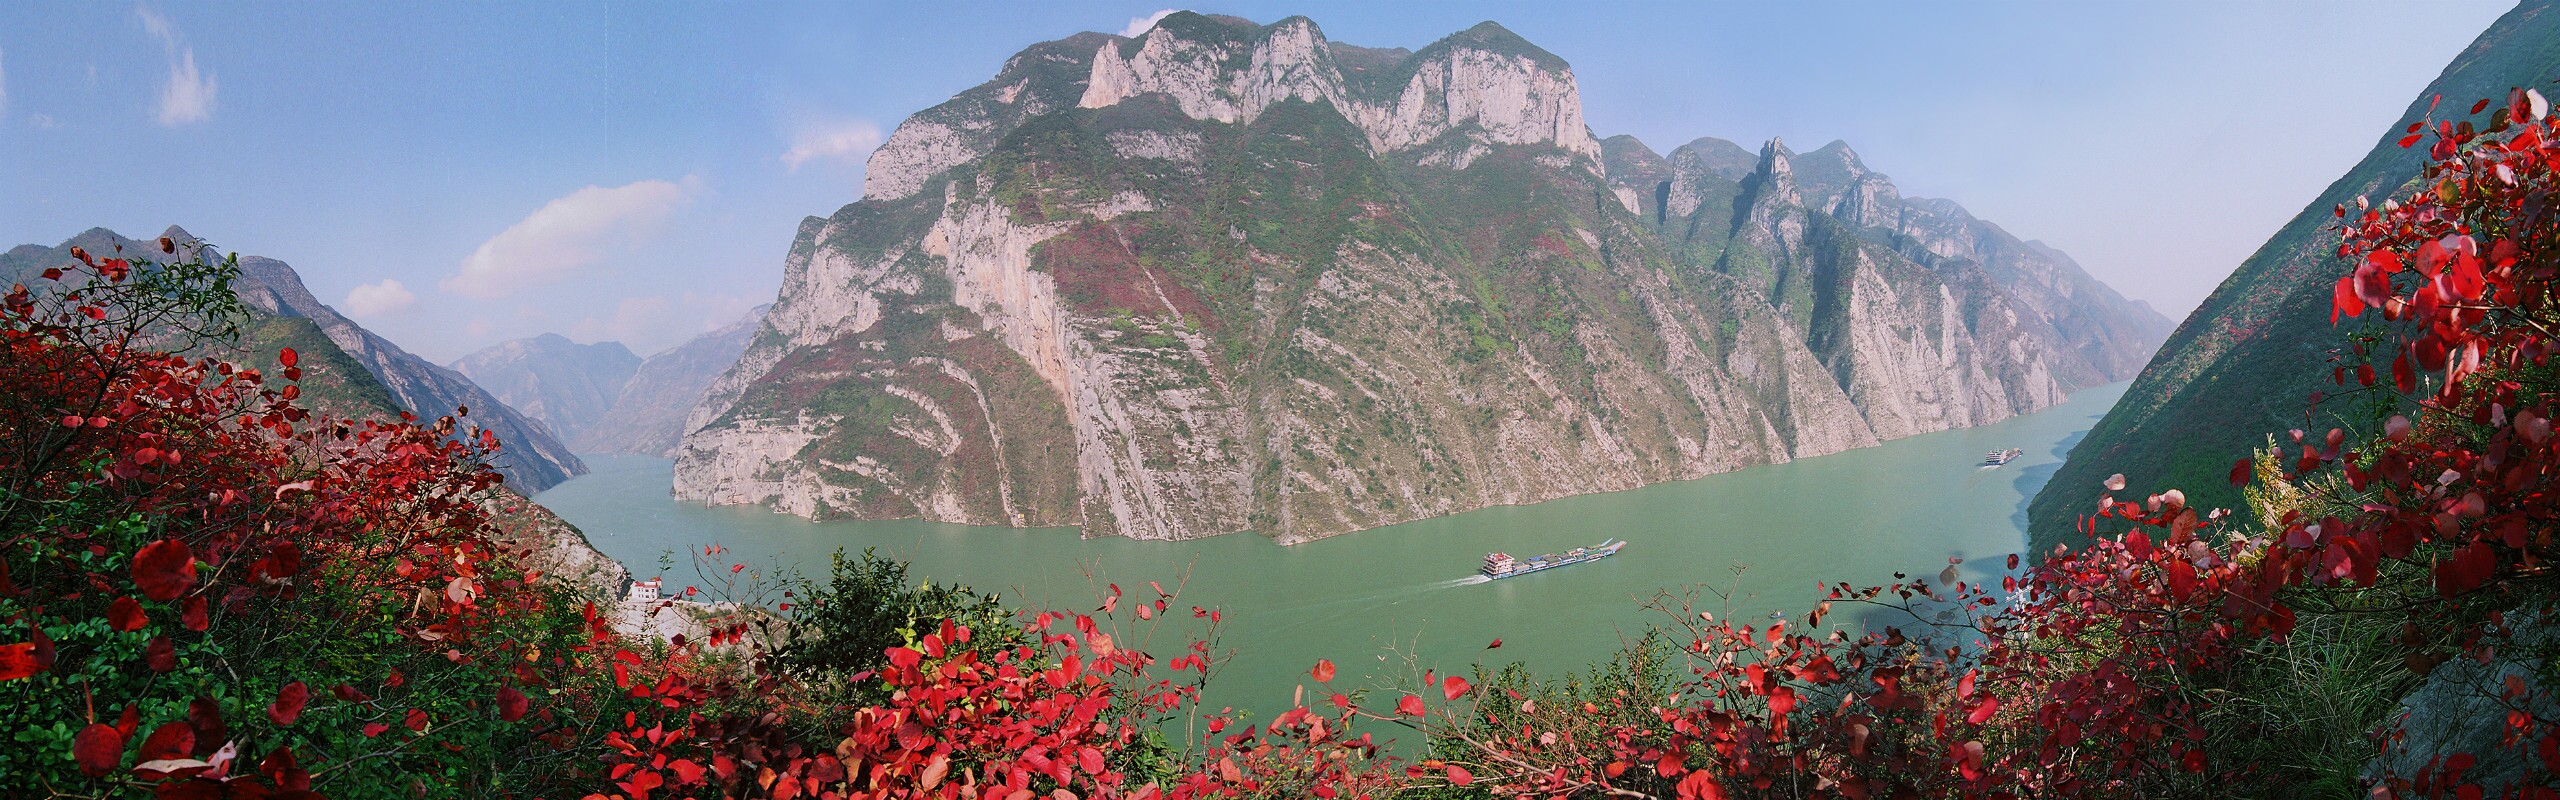 5-Day Chongqing and Yangtze River Cruise Tour